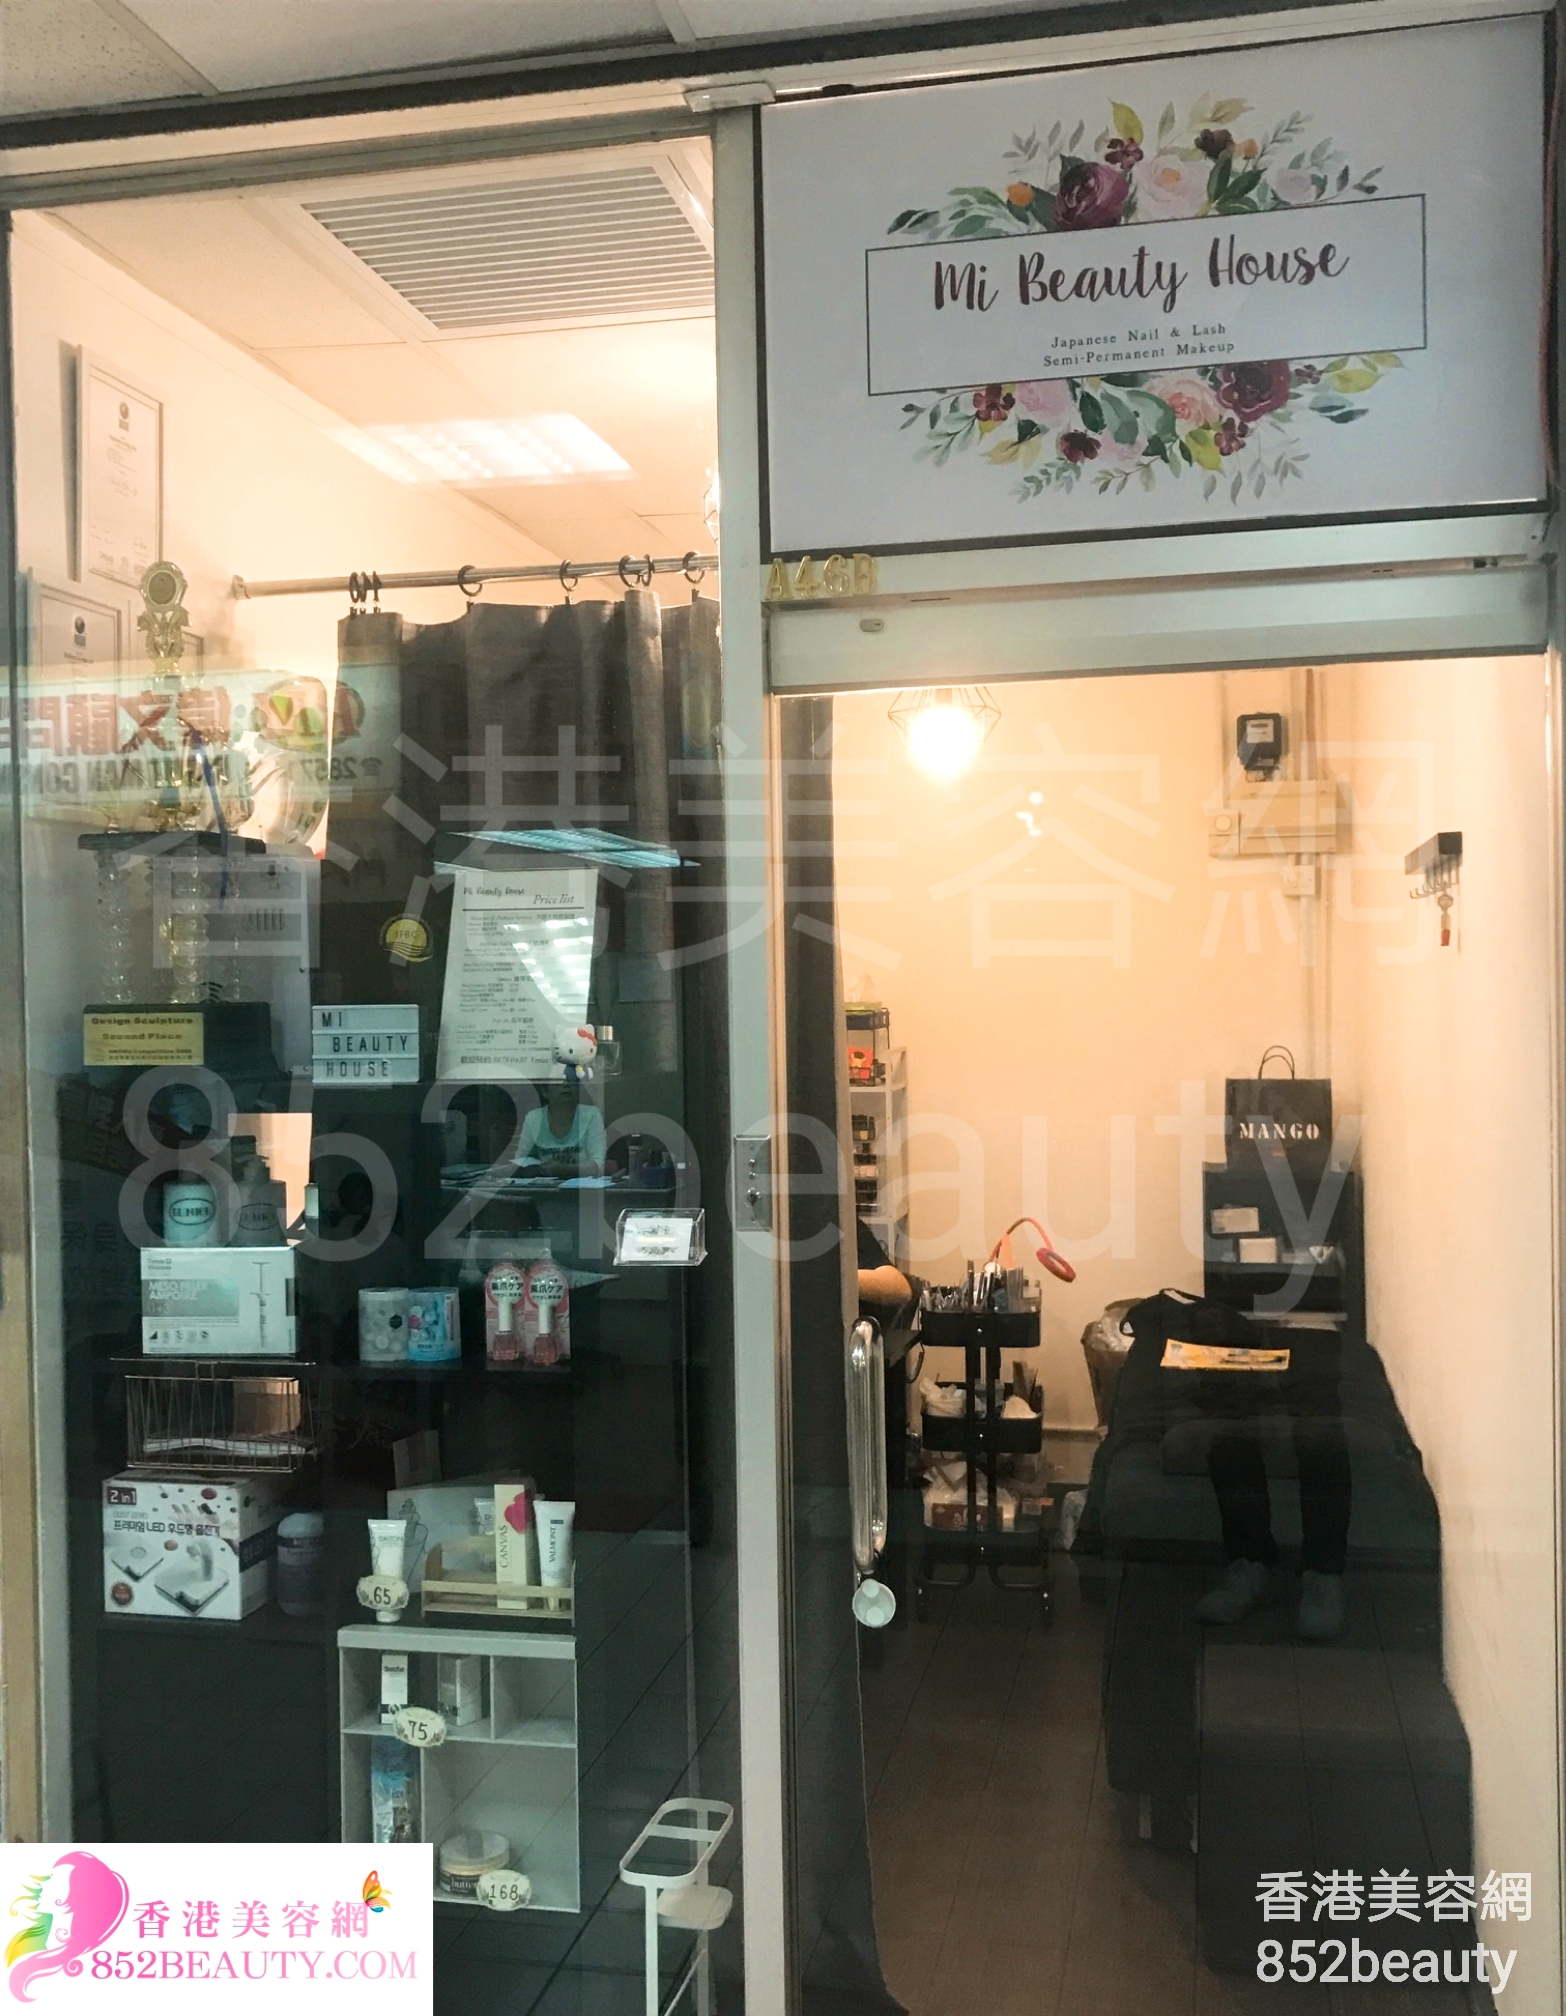 Beauty Salon: Mi Beauty House